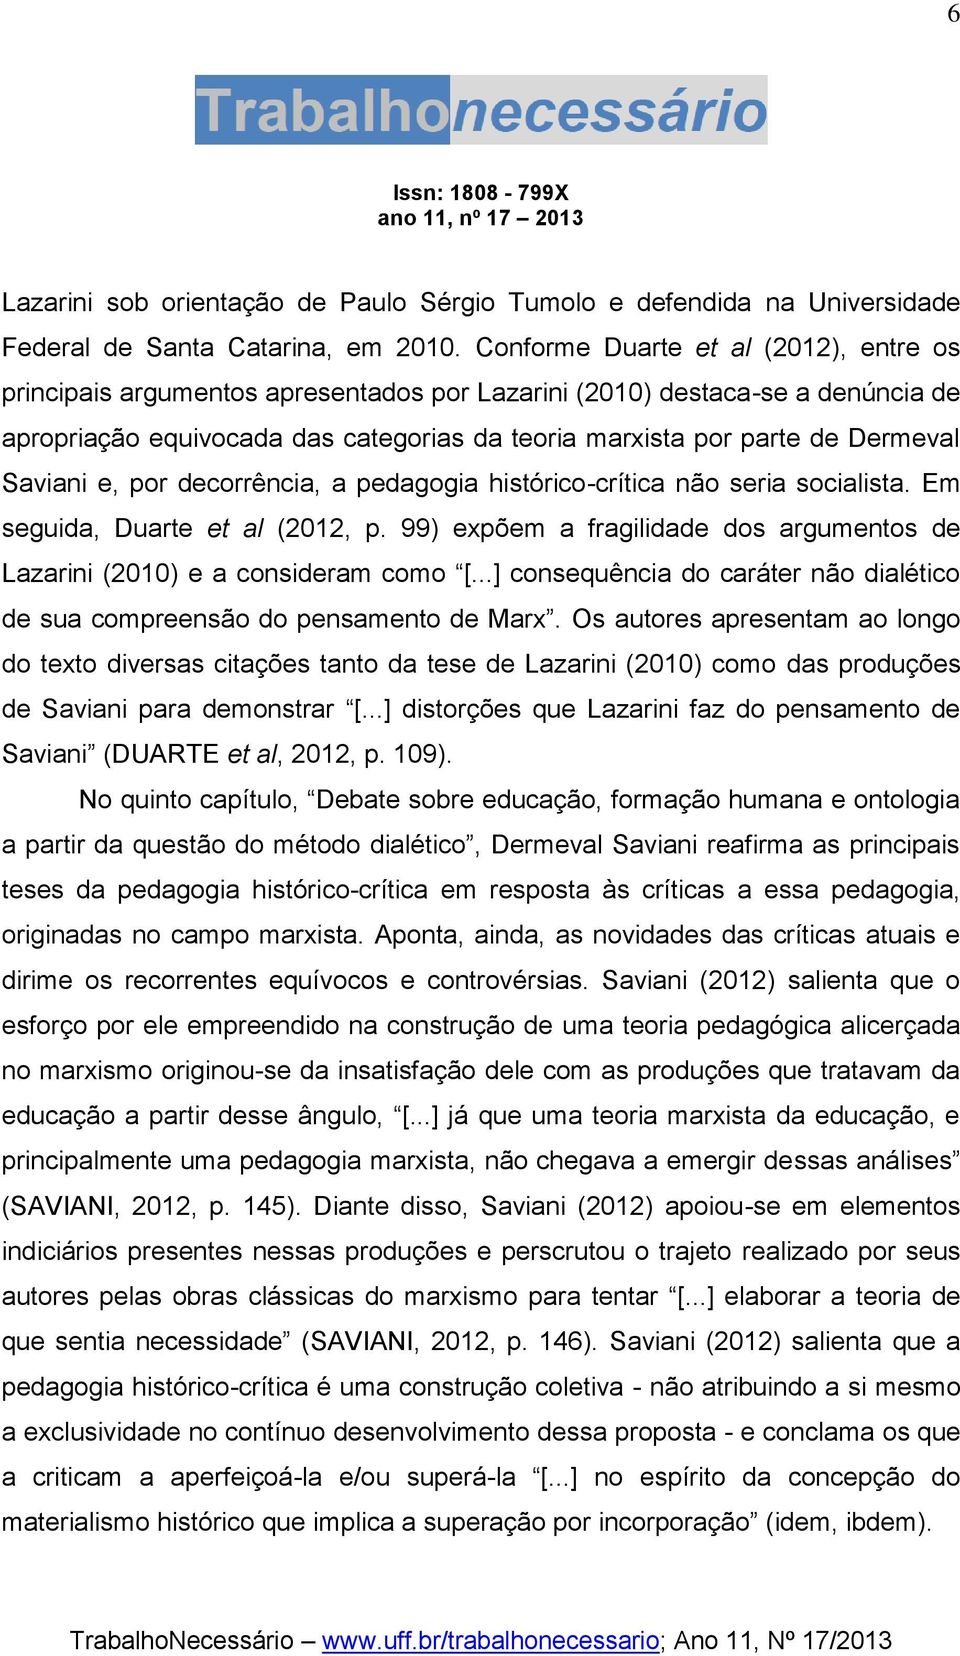 Saviani e, por decorrência, a pedagogia histórico-crítica não seria socialista. Em seguida, Duarte et al (2012, p. 99) expõem a fragilidade dos argumentos de Lazarini (2010) e a consideram como [.